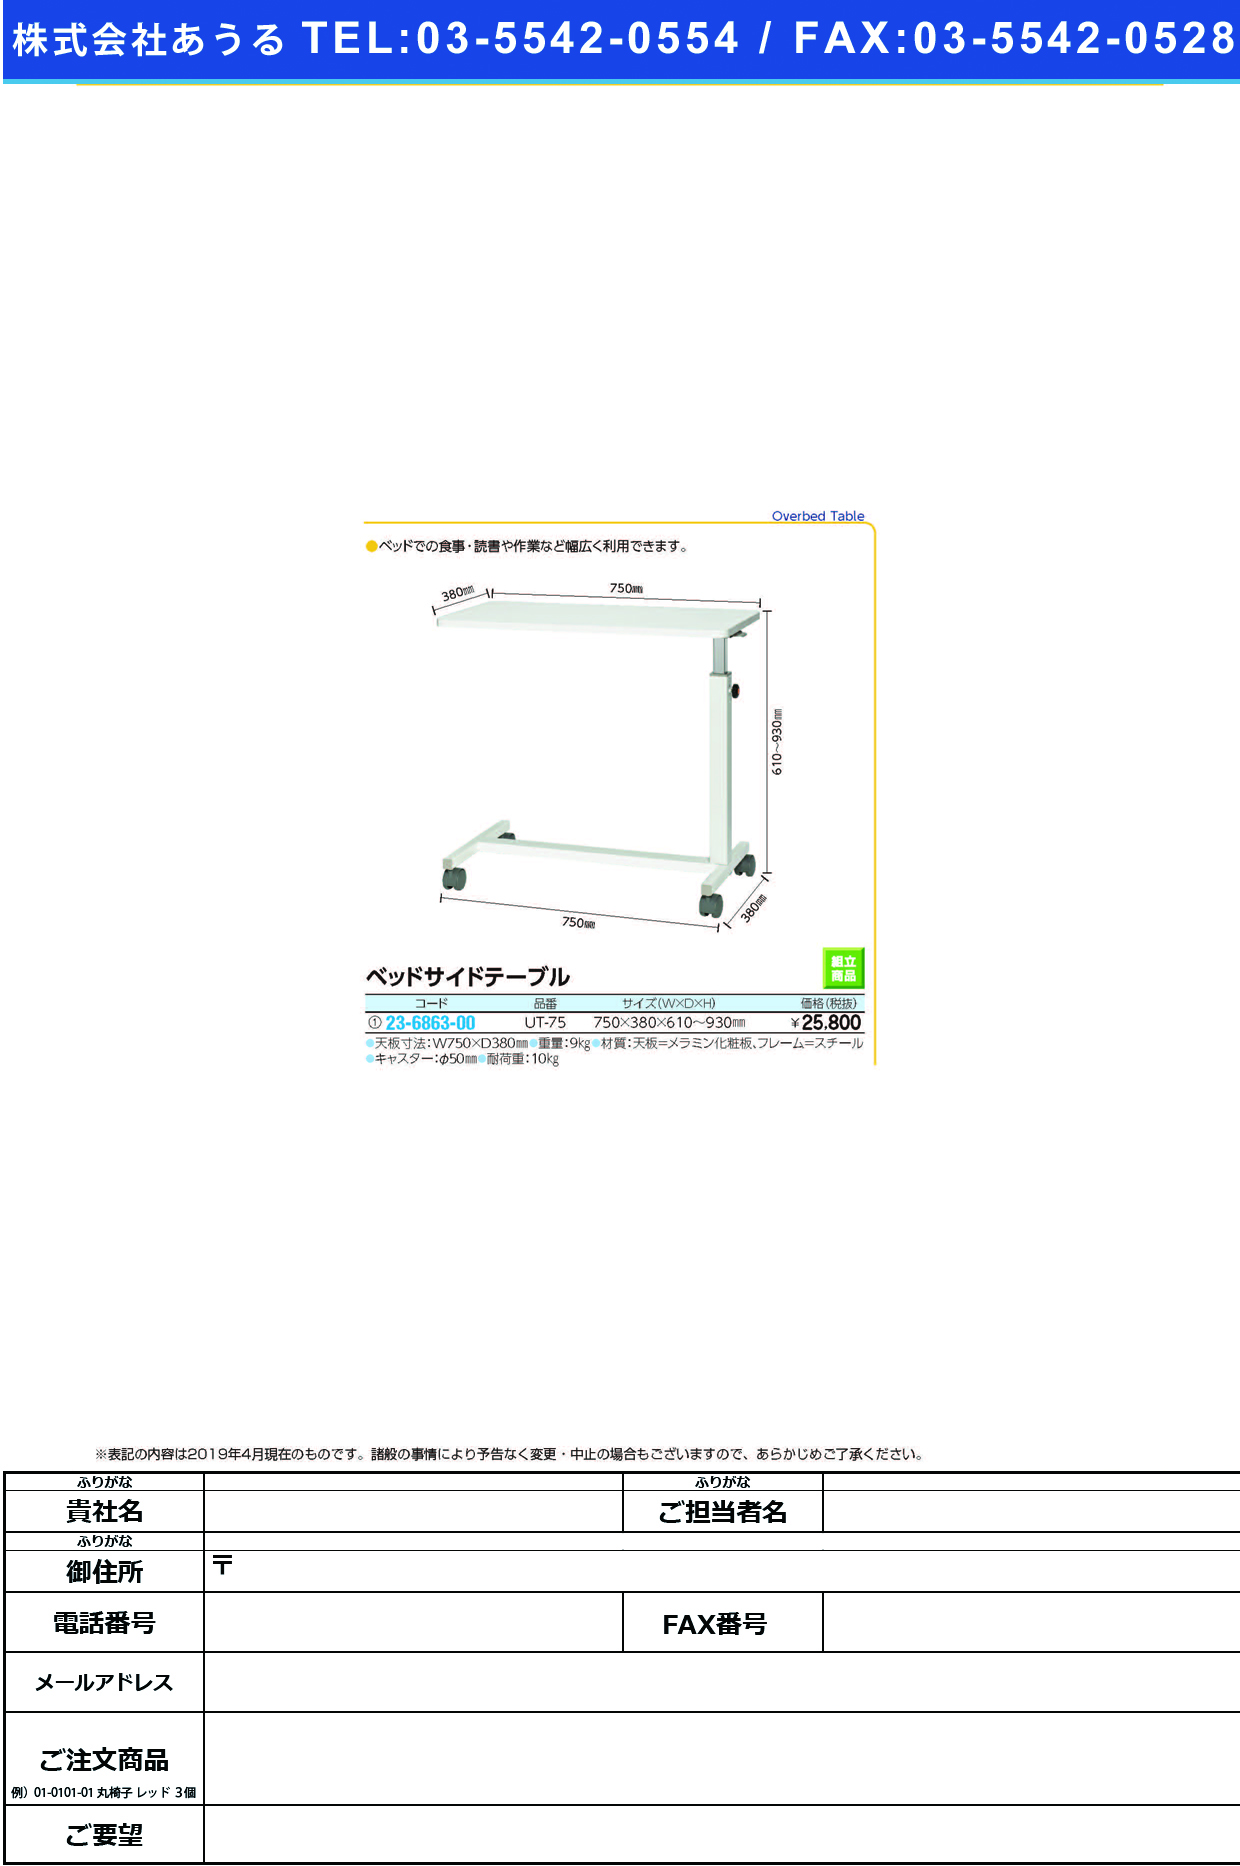 (23-6863-00)ベッドサイドテーブル UT-75 ﾍﾞｯﾄﾞｻｲﾄﾞﾃｰﾌﾞﾙ【1台単位】【2019年カタログ商品】